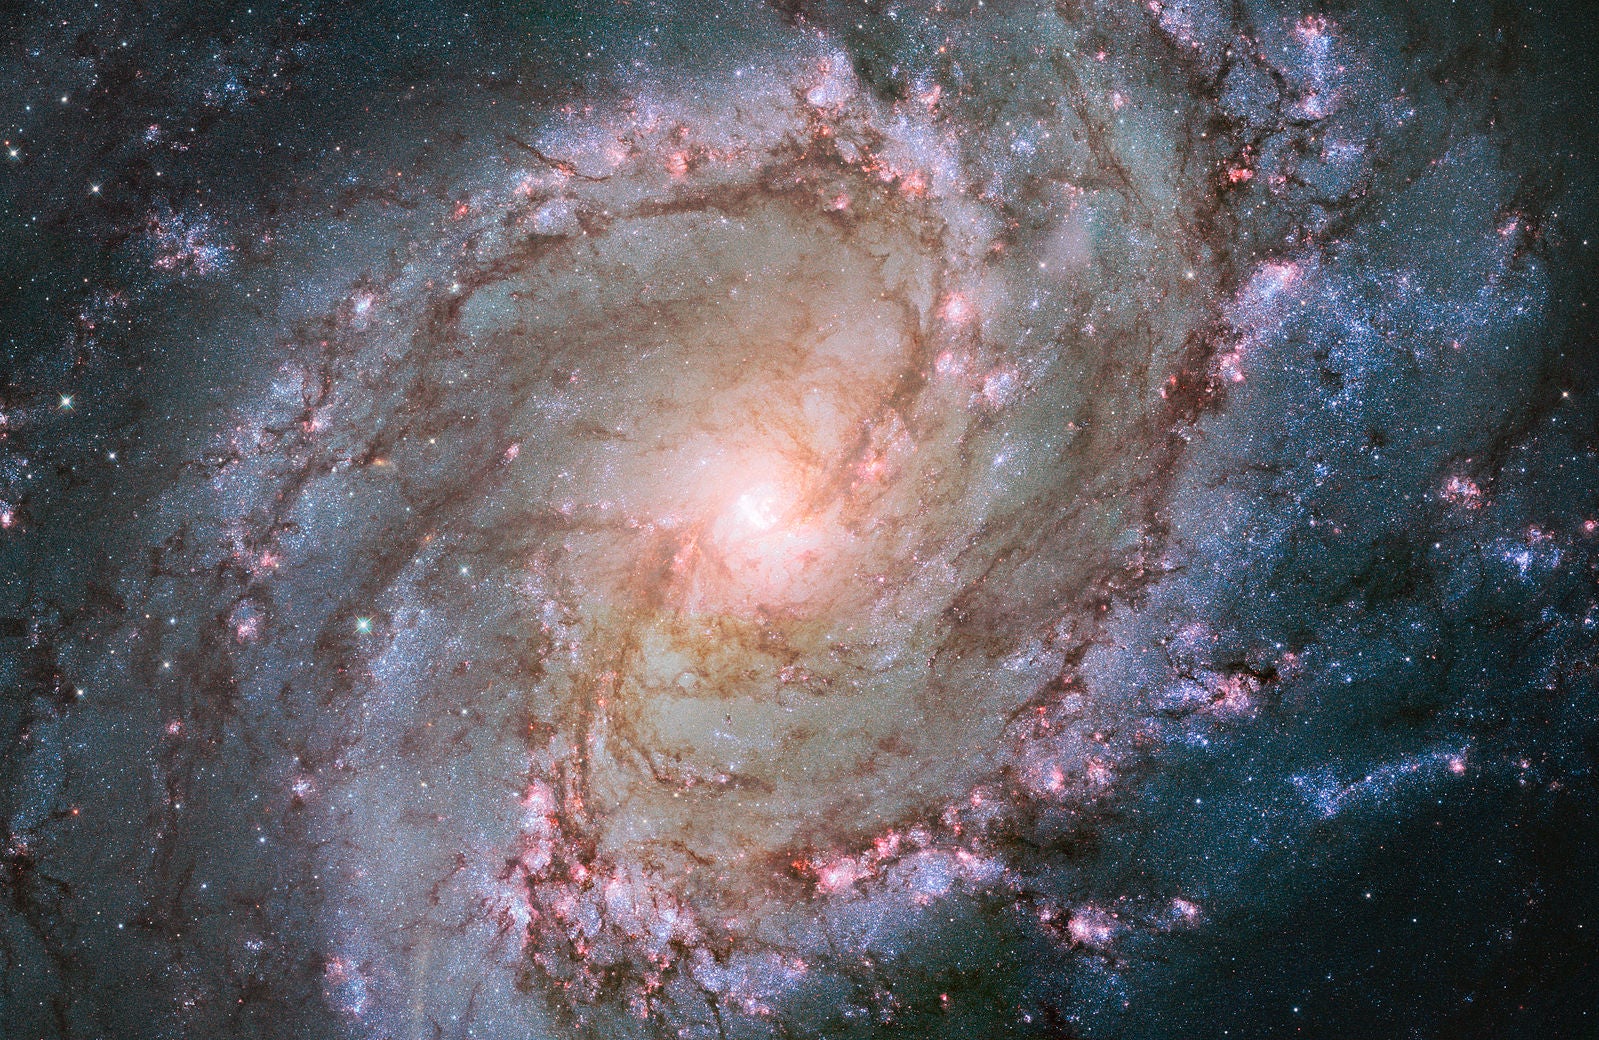 The Water Snake’s hidden gem, the spiral galaxy M83